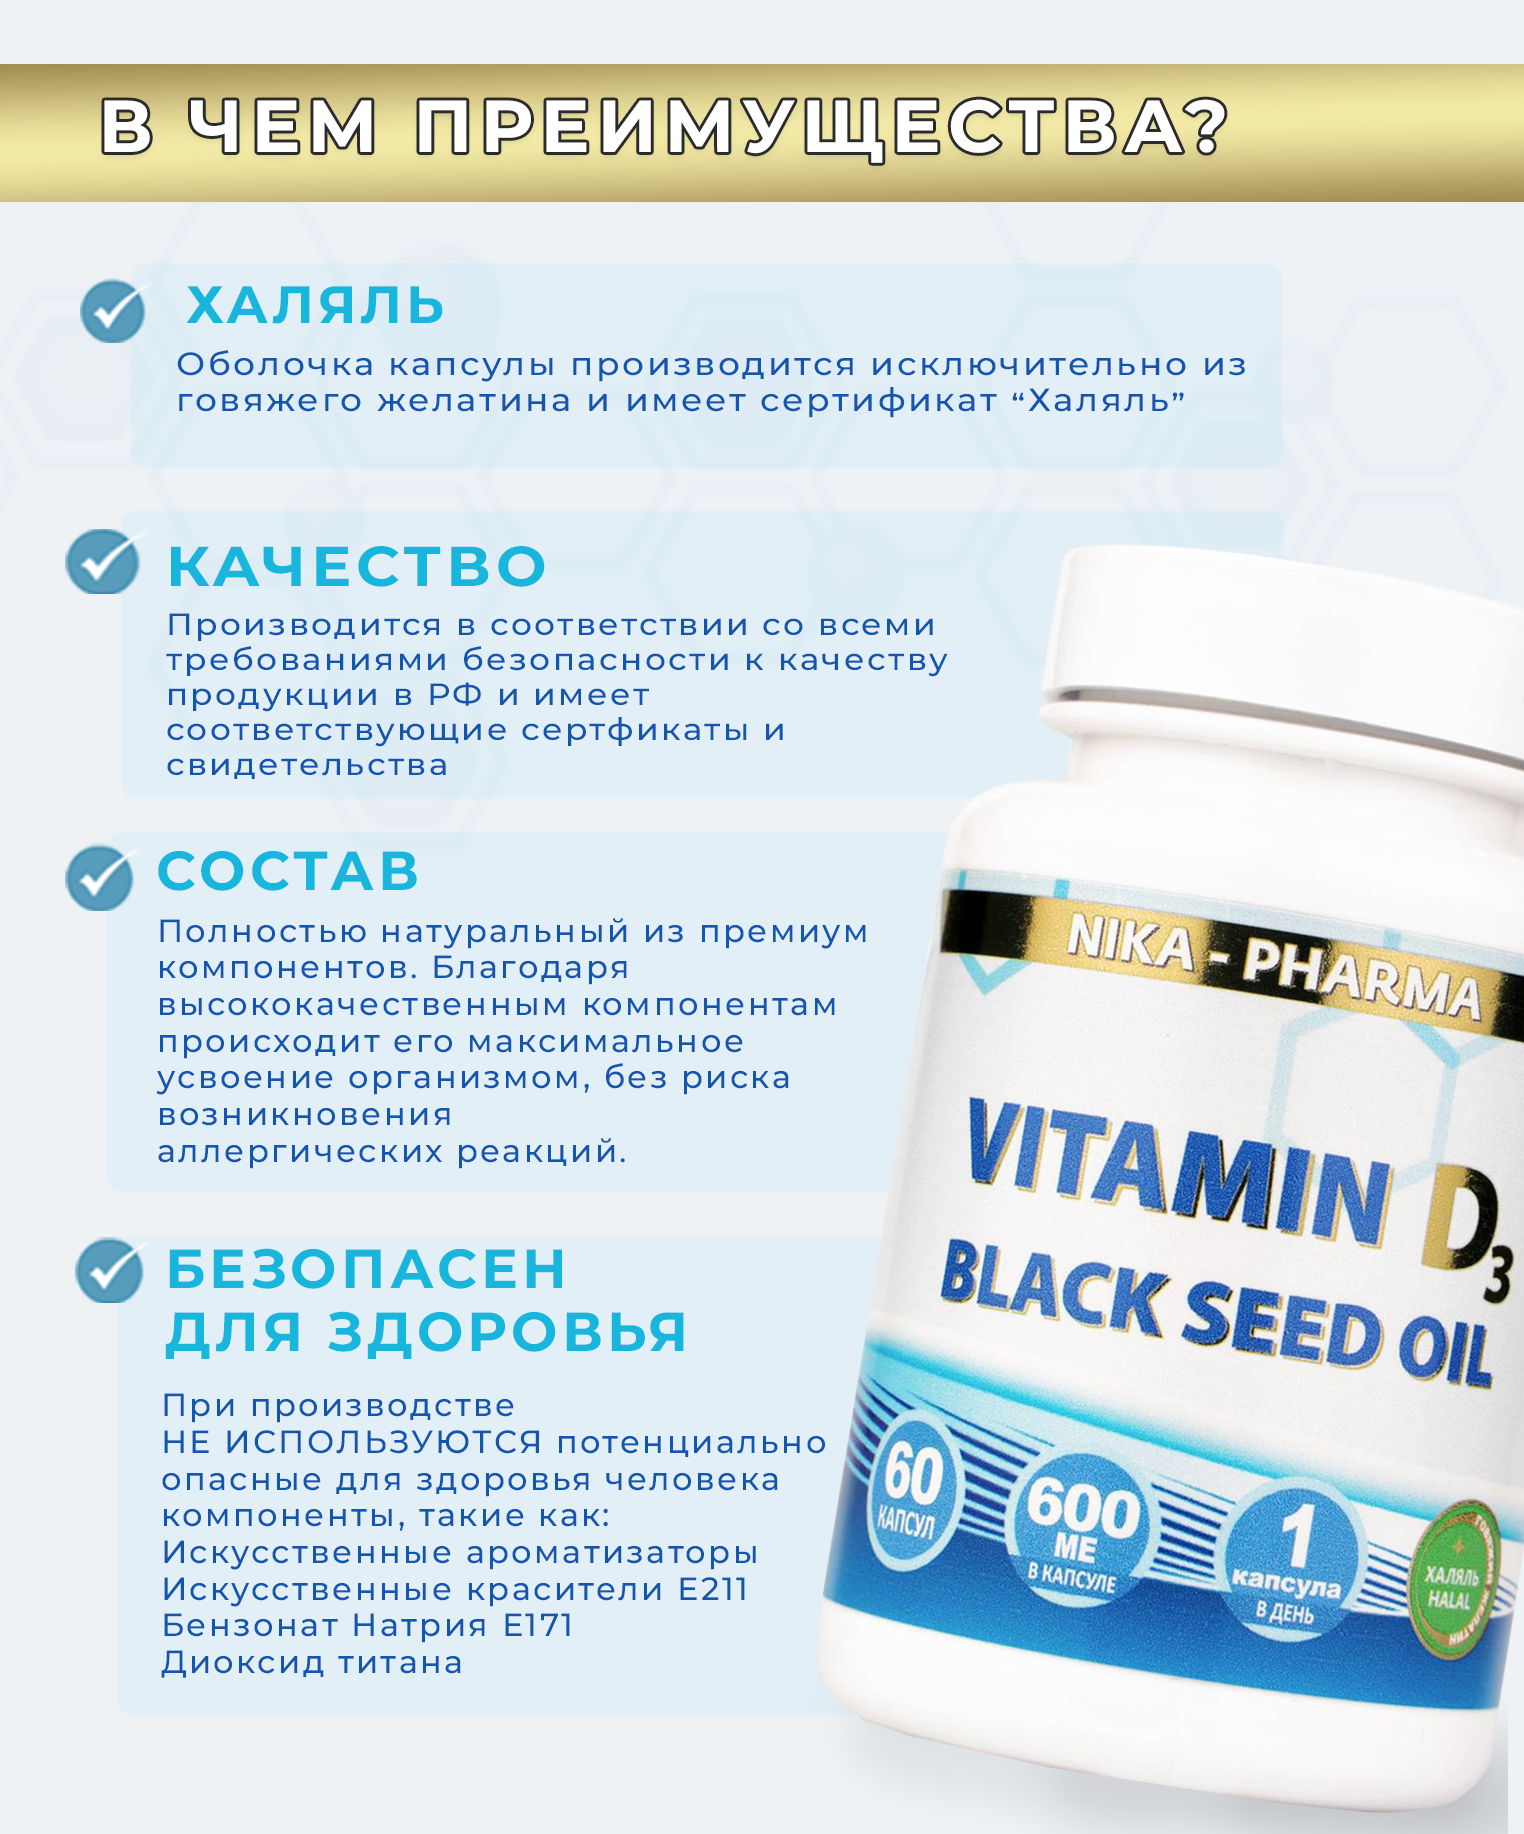 Витамин Д NIKA-PHARMA с маслом черного тмина - фото 6